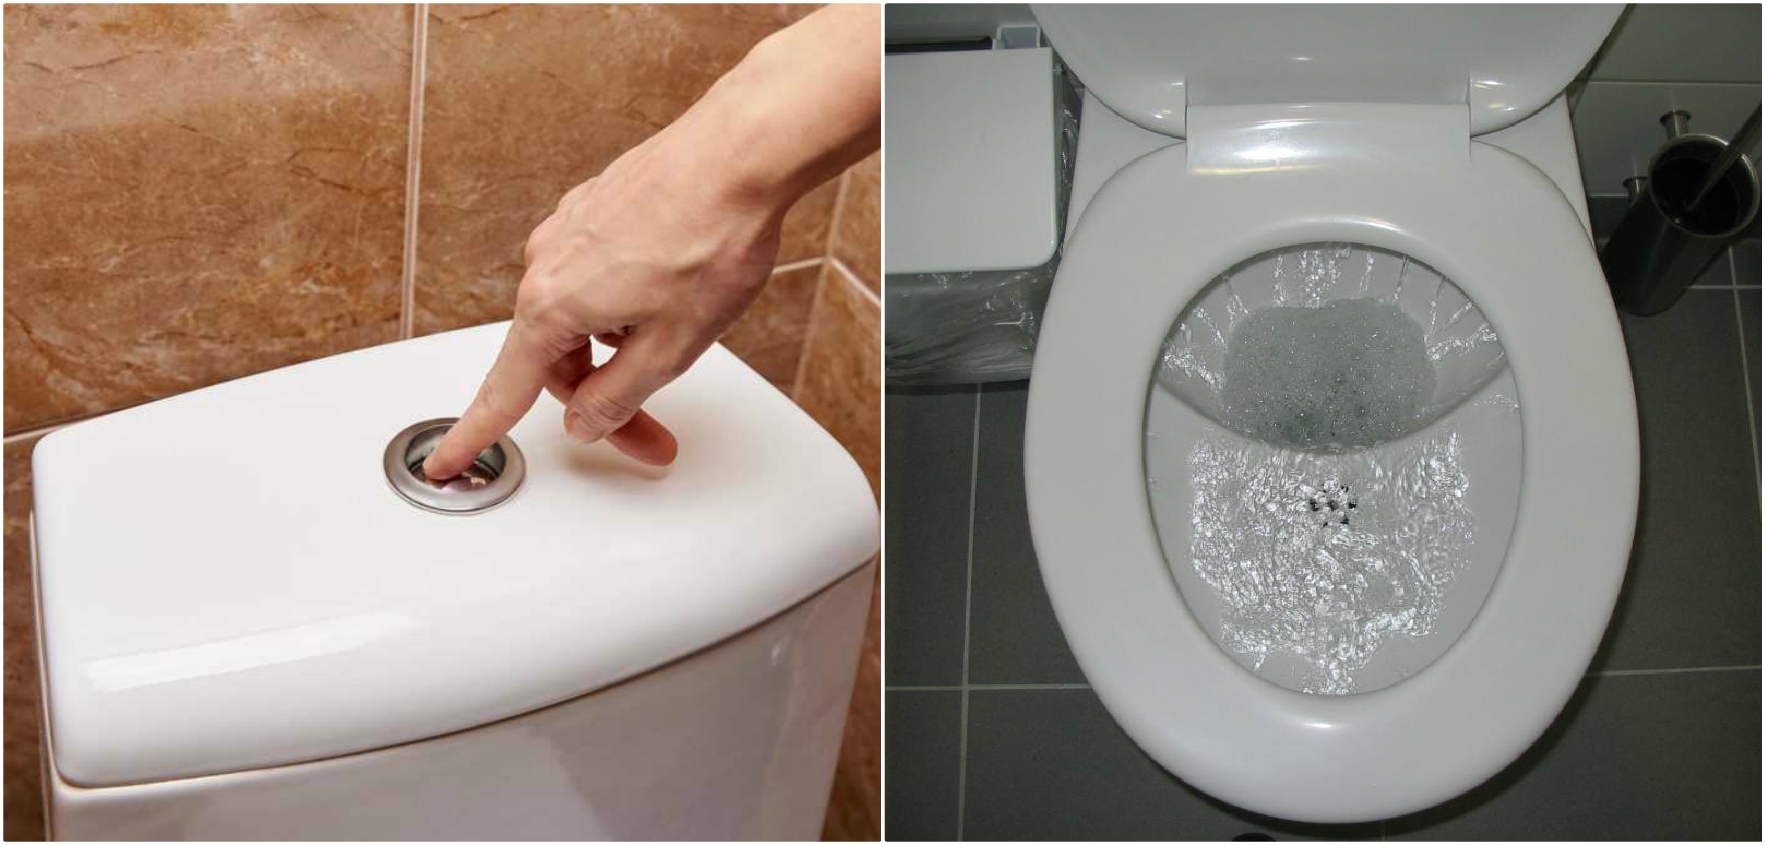 Zbrazja e tualetit mund të ngrejë viruse në ajër deri në 90 centimetra